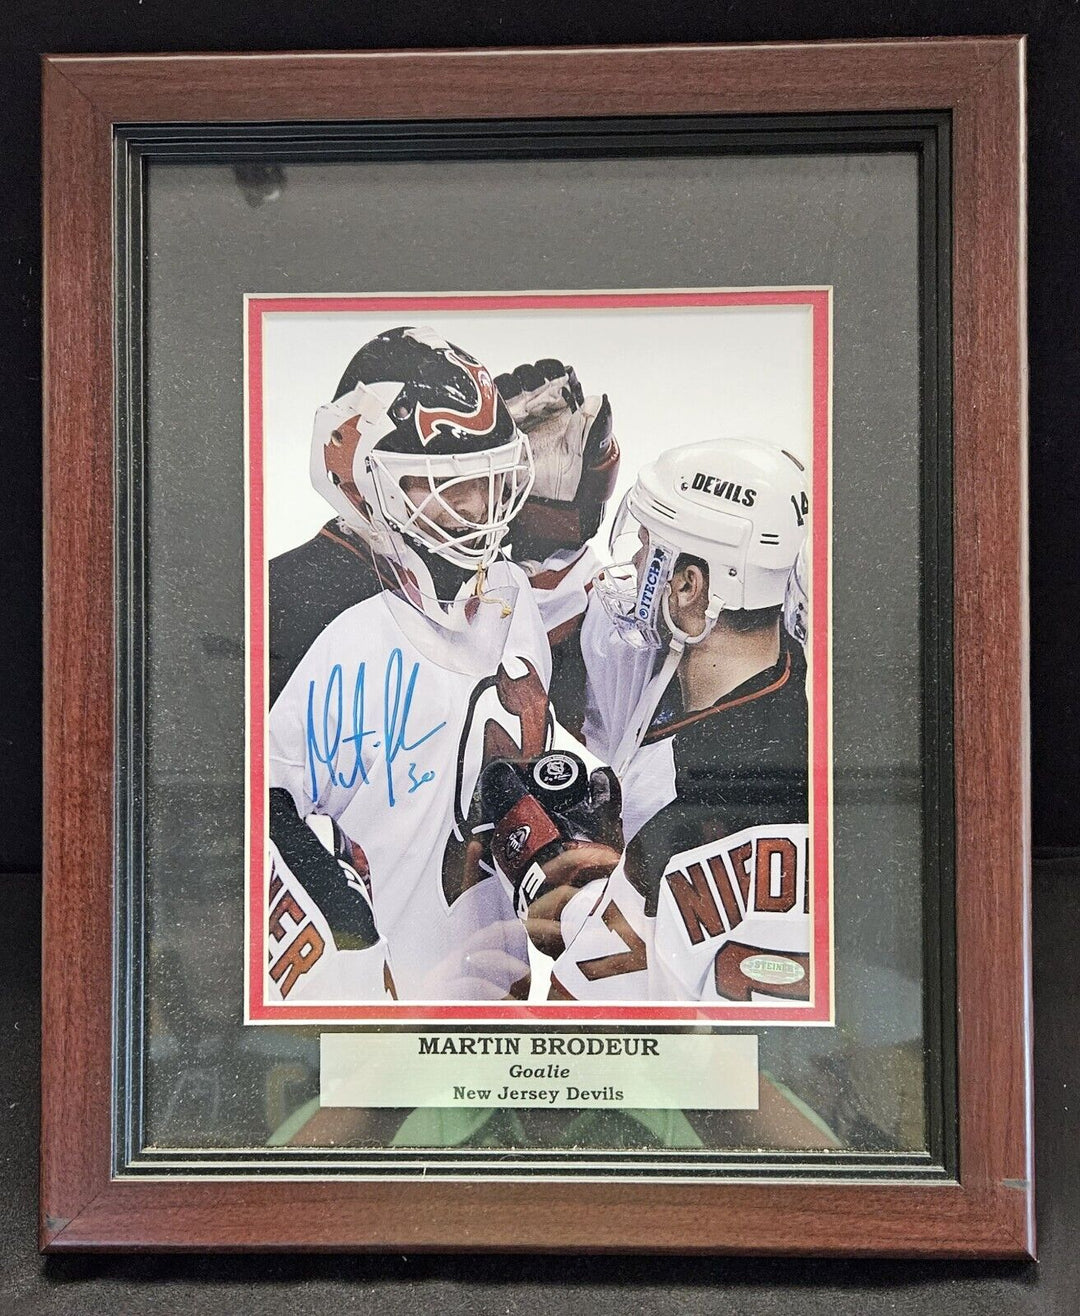 Martin Brodeur Signed 8x10 Framed Photo Steiner COA New Jersey Devils NHL HOF